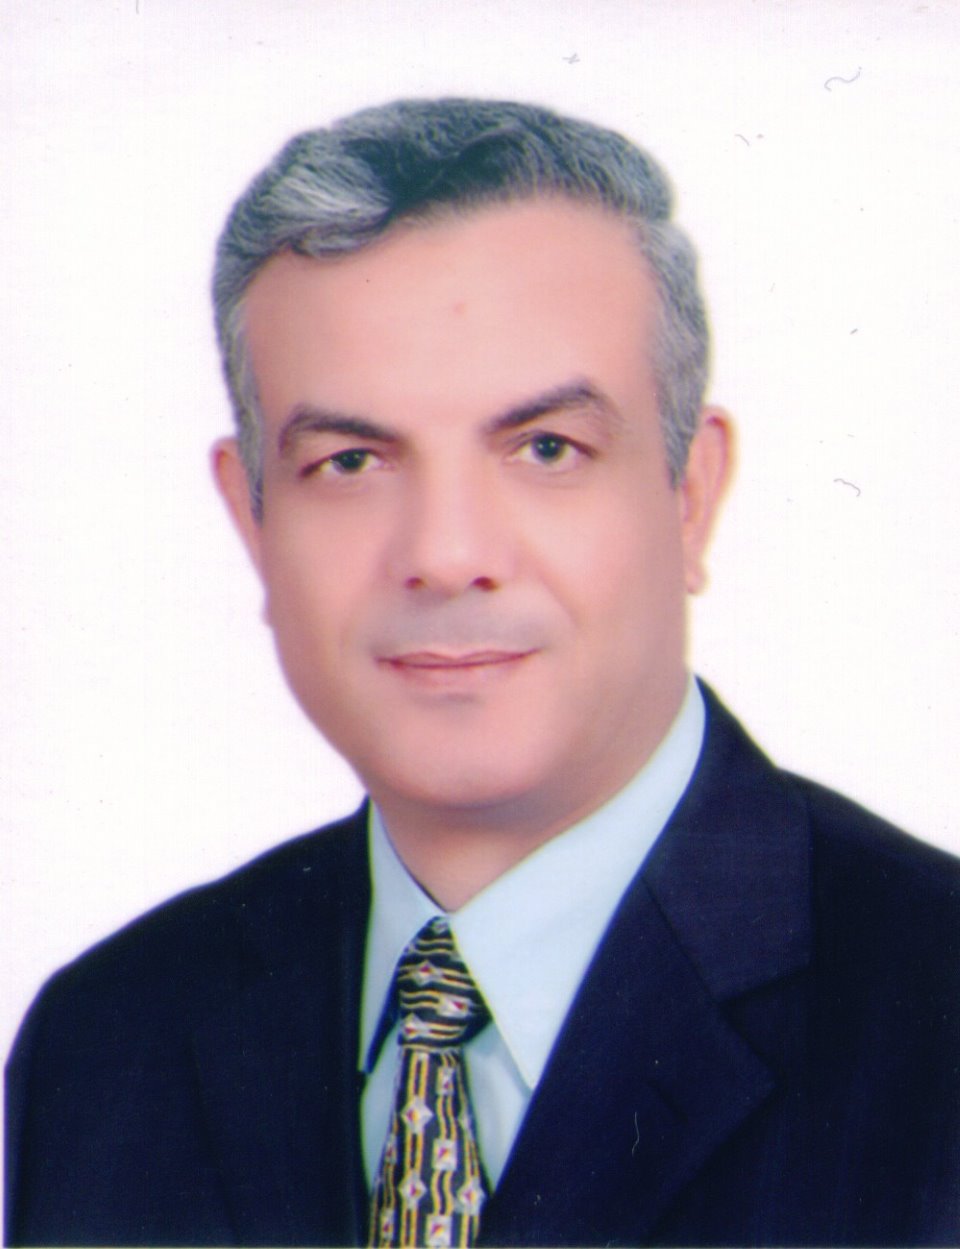 Adel El-Sayed Sadek Mubarak